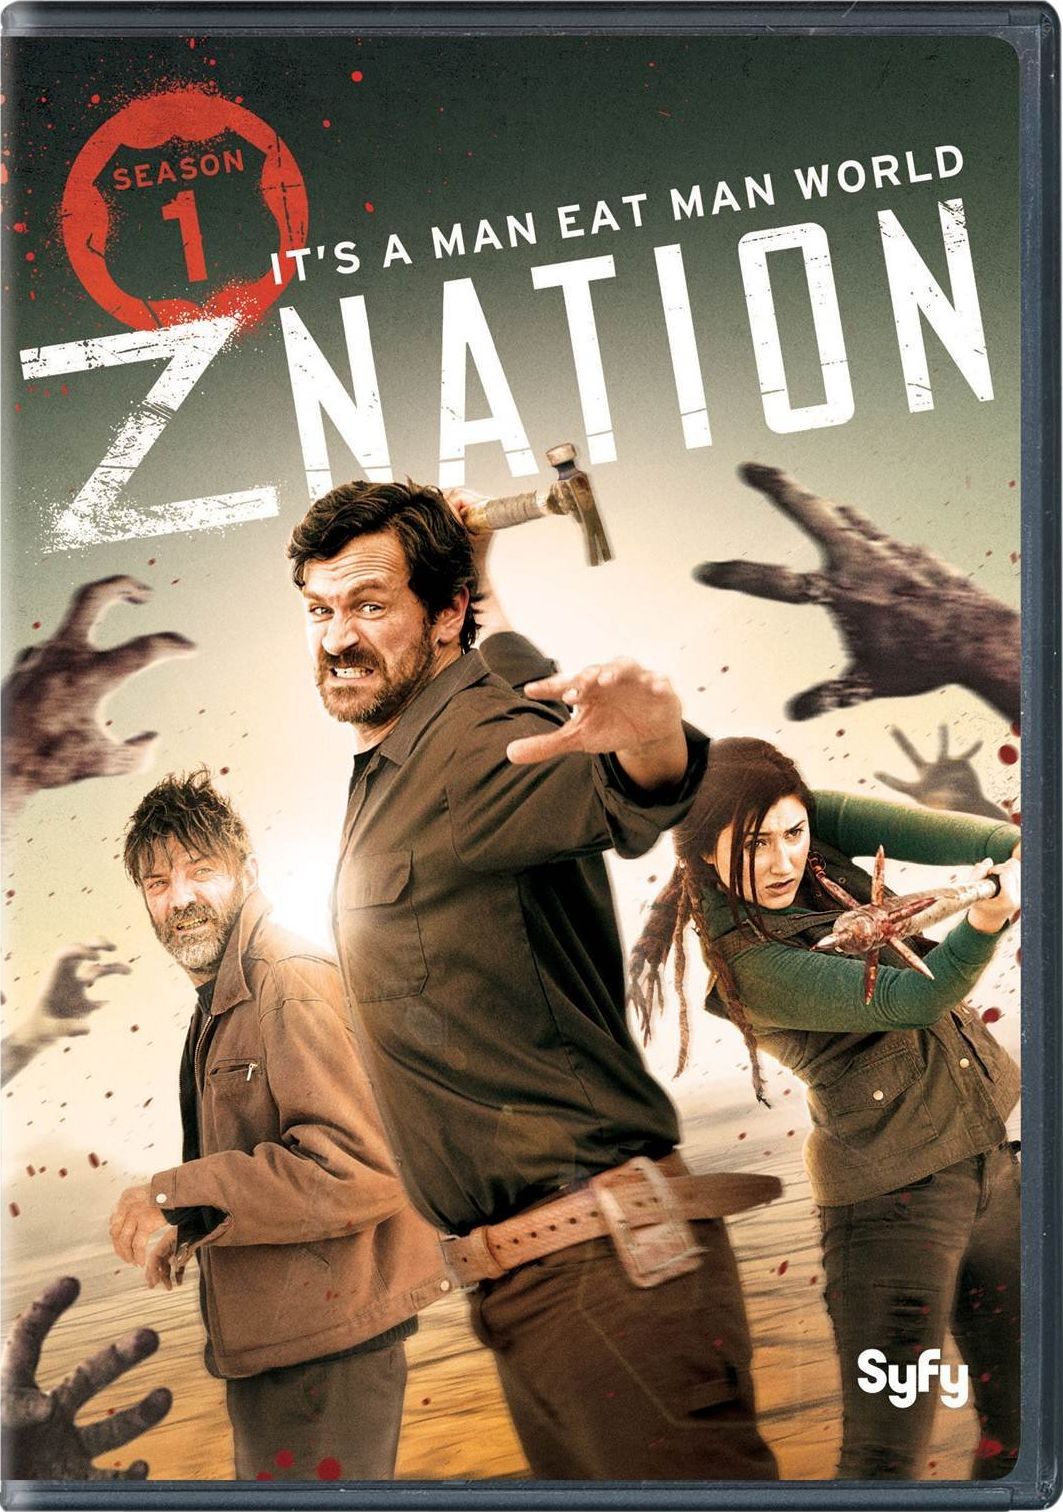 Z Nation Season One DVD Review